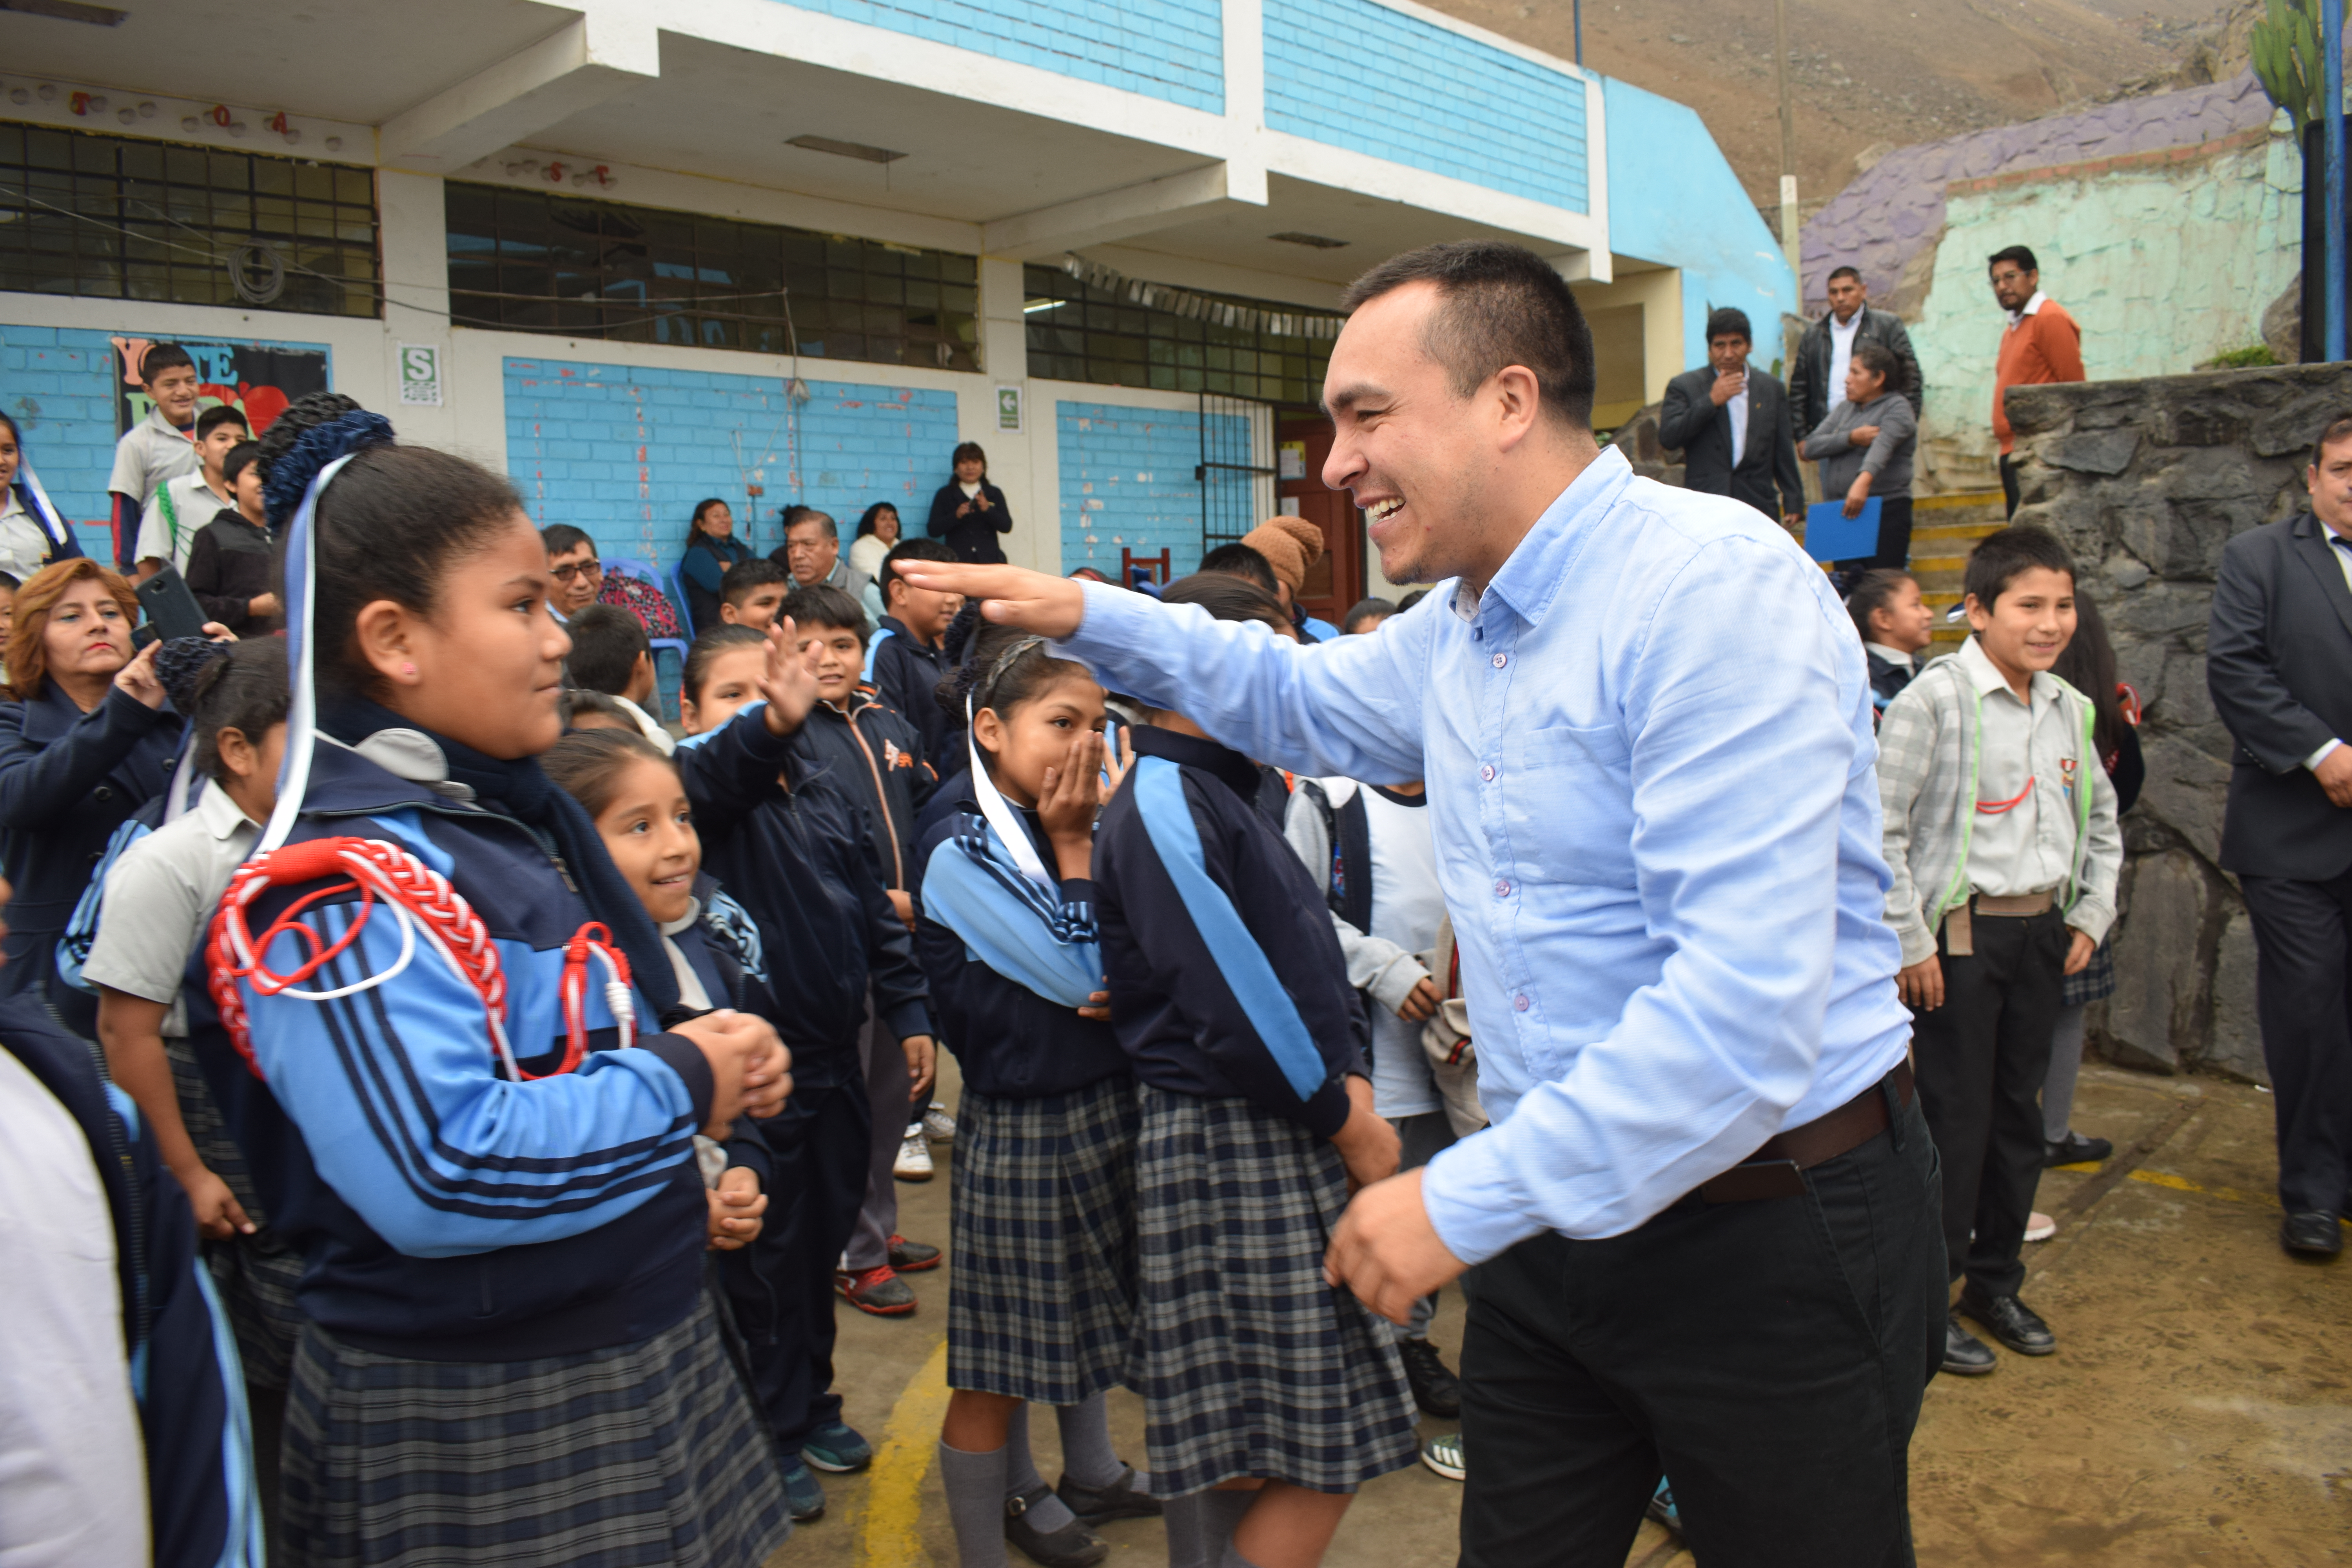 Alcalde Raúl Díaz Pérez visita colegios del distrito y dona obras literarias para bibliotecas escolares